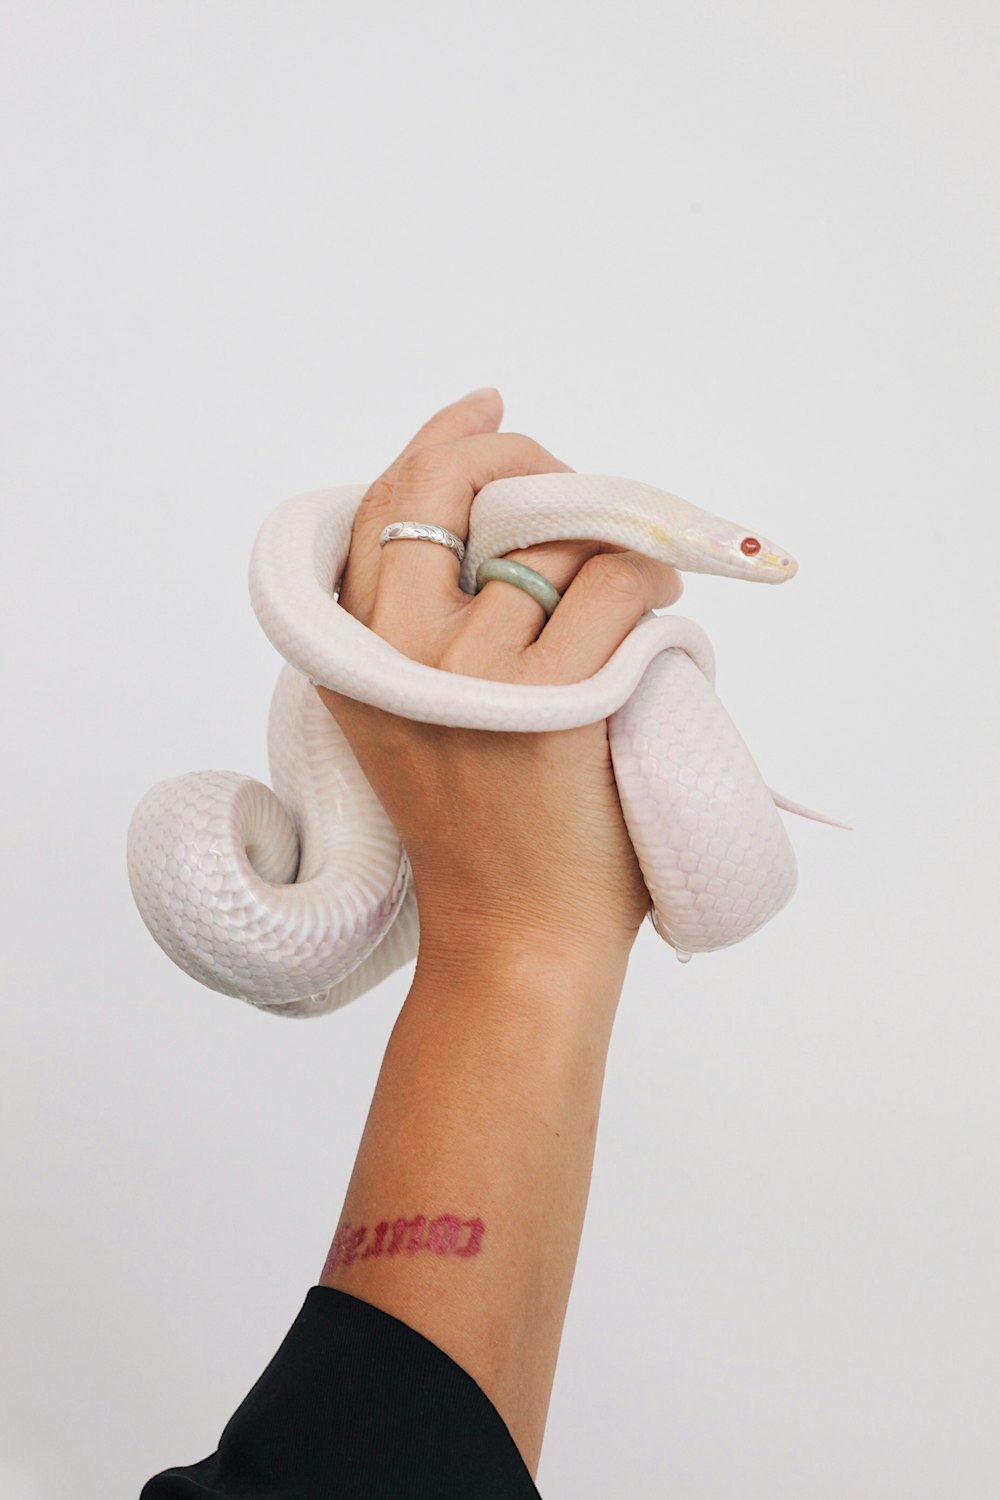 Albino-Schlange auf der Hand der Person gewickelt